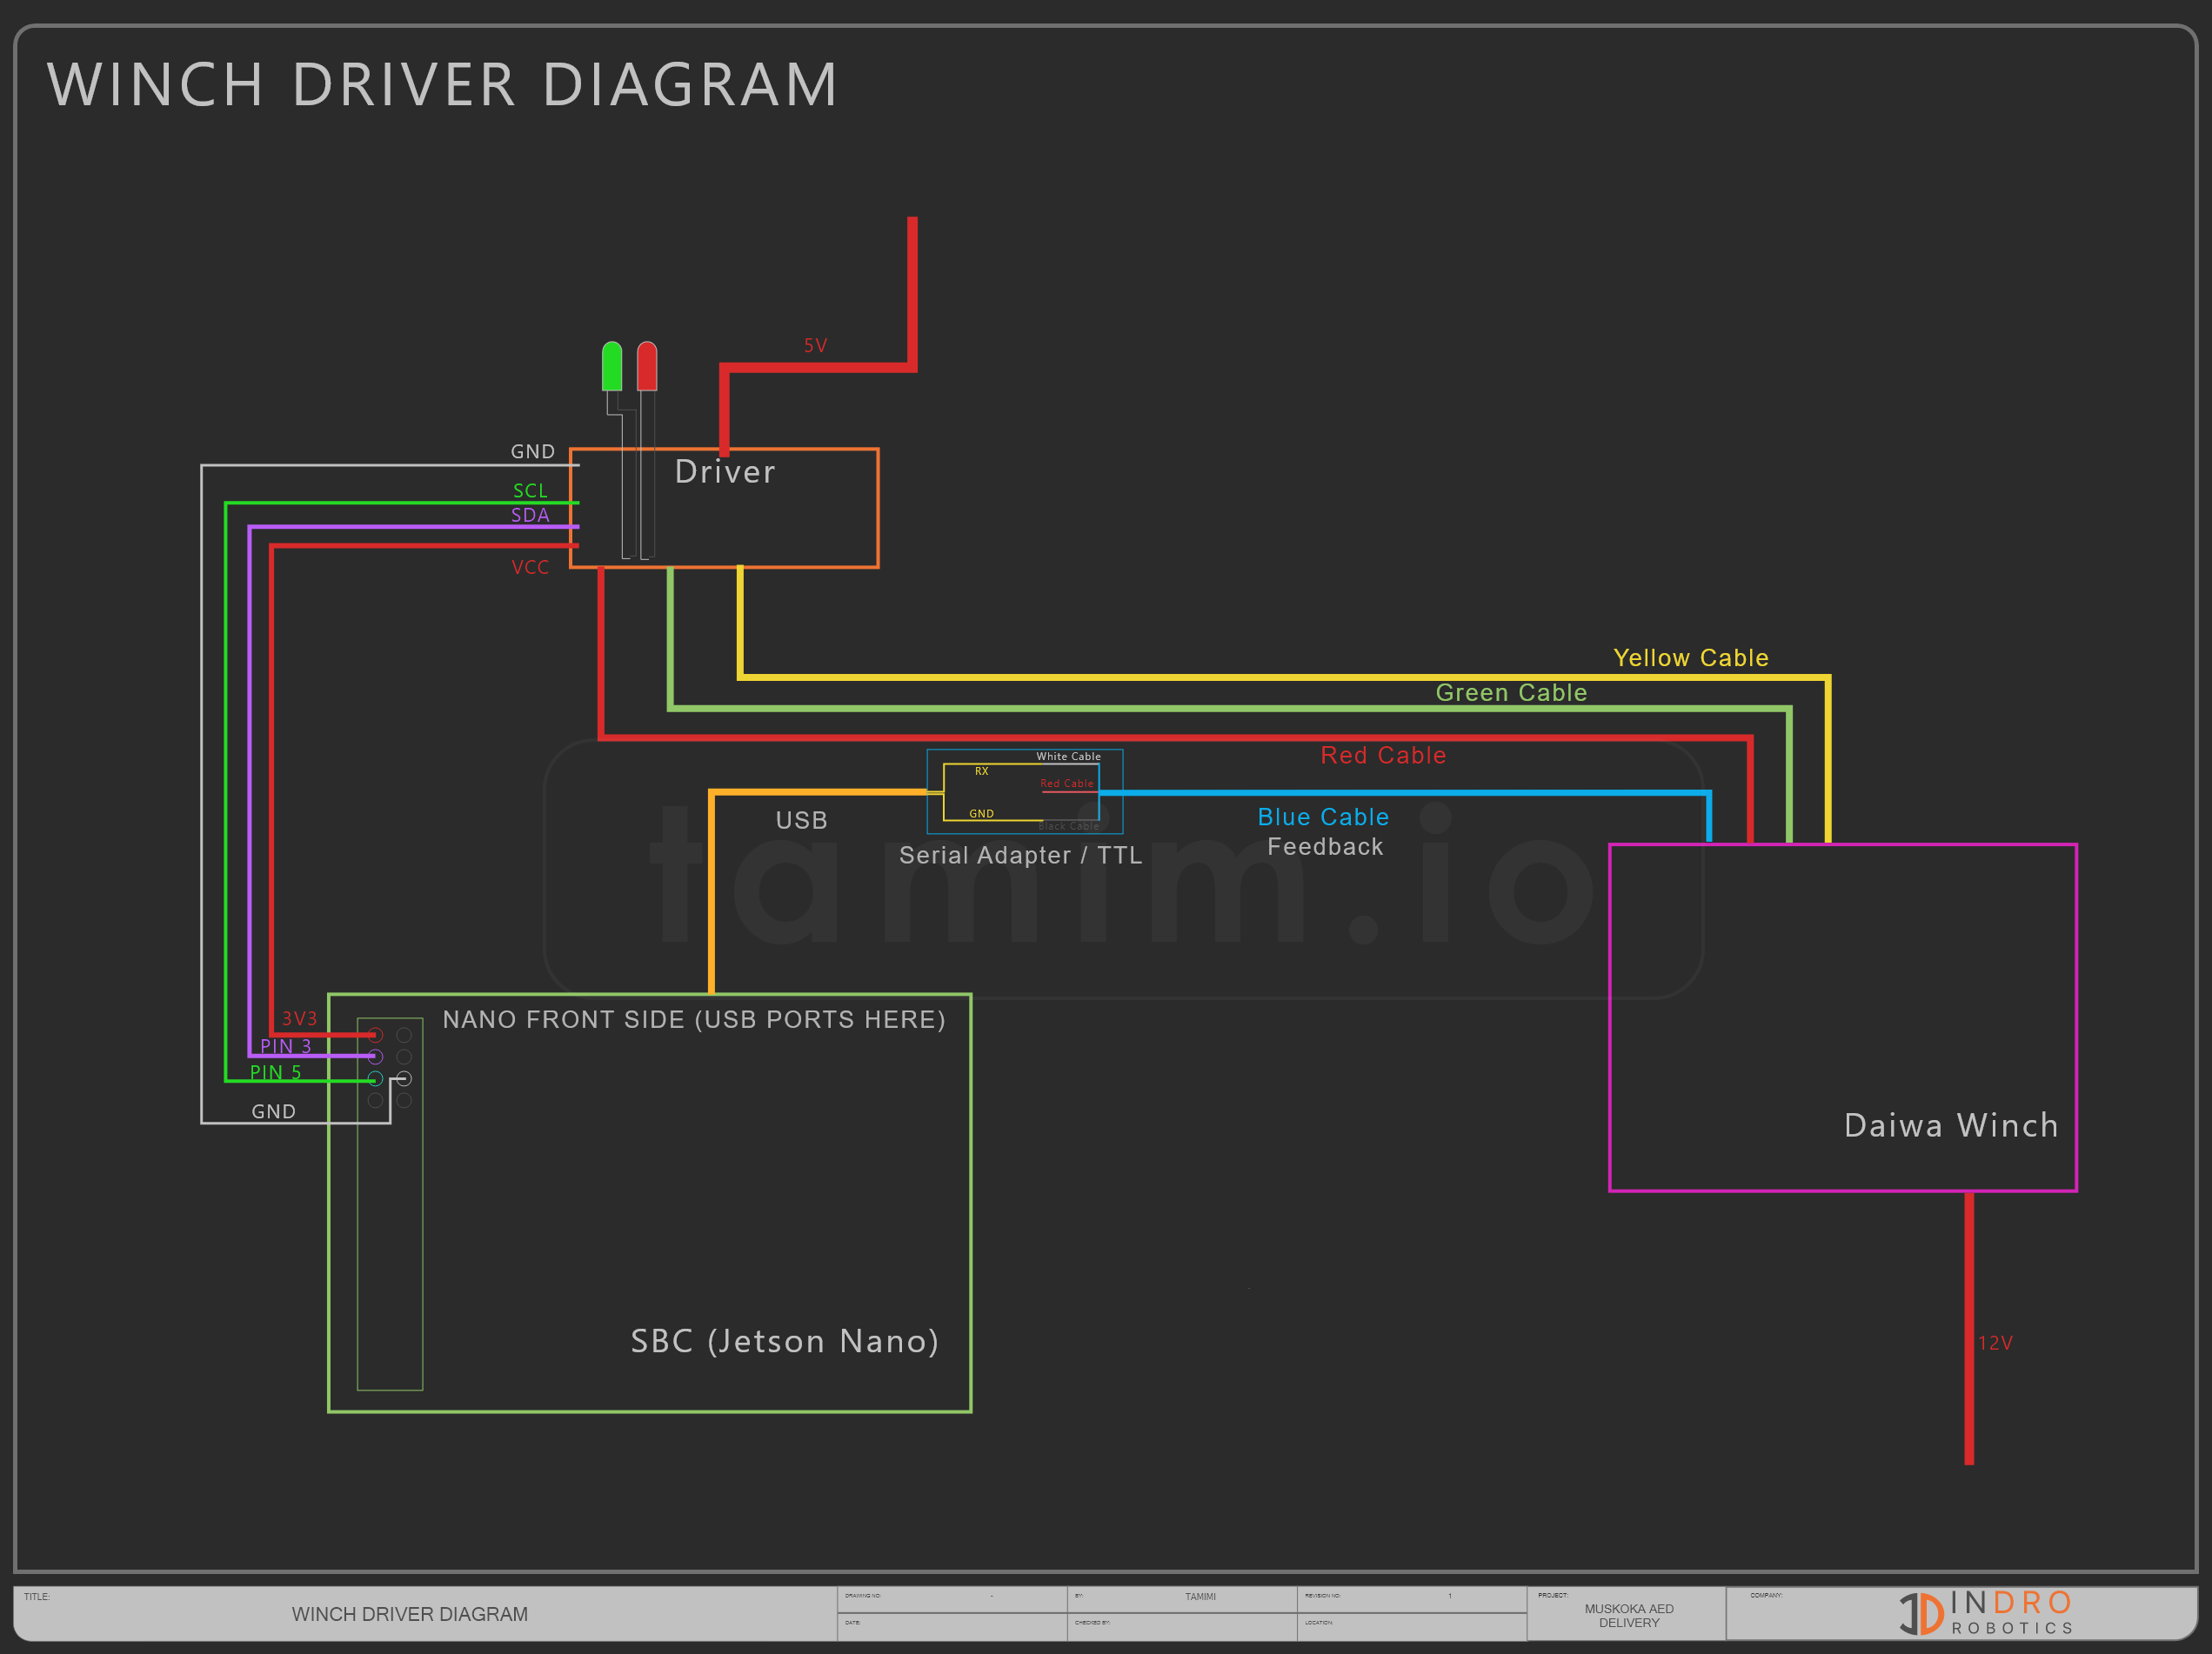 Daiwa Winch driver diagram